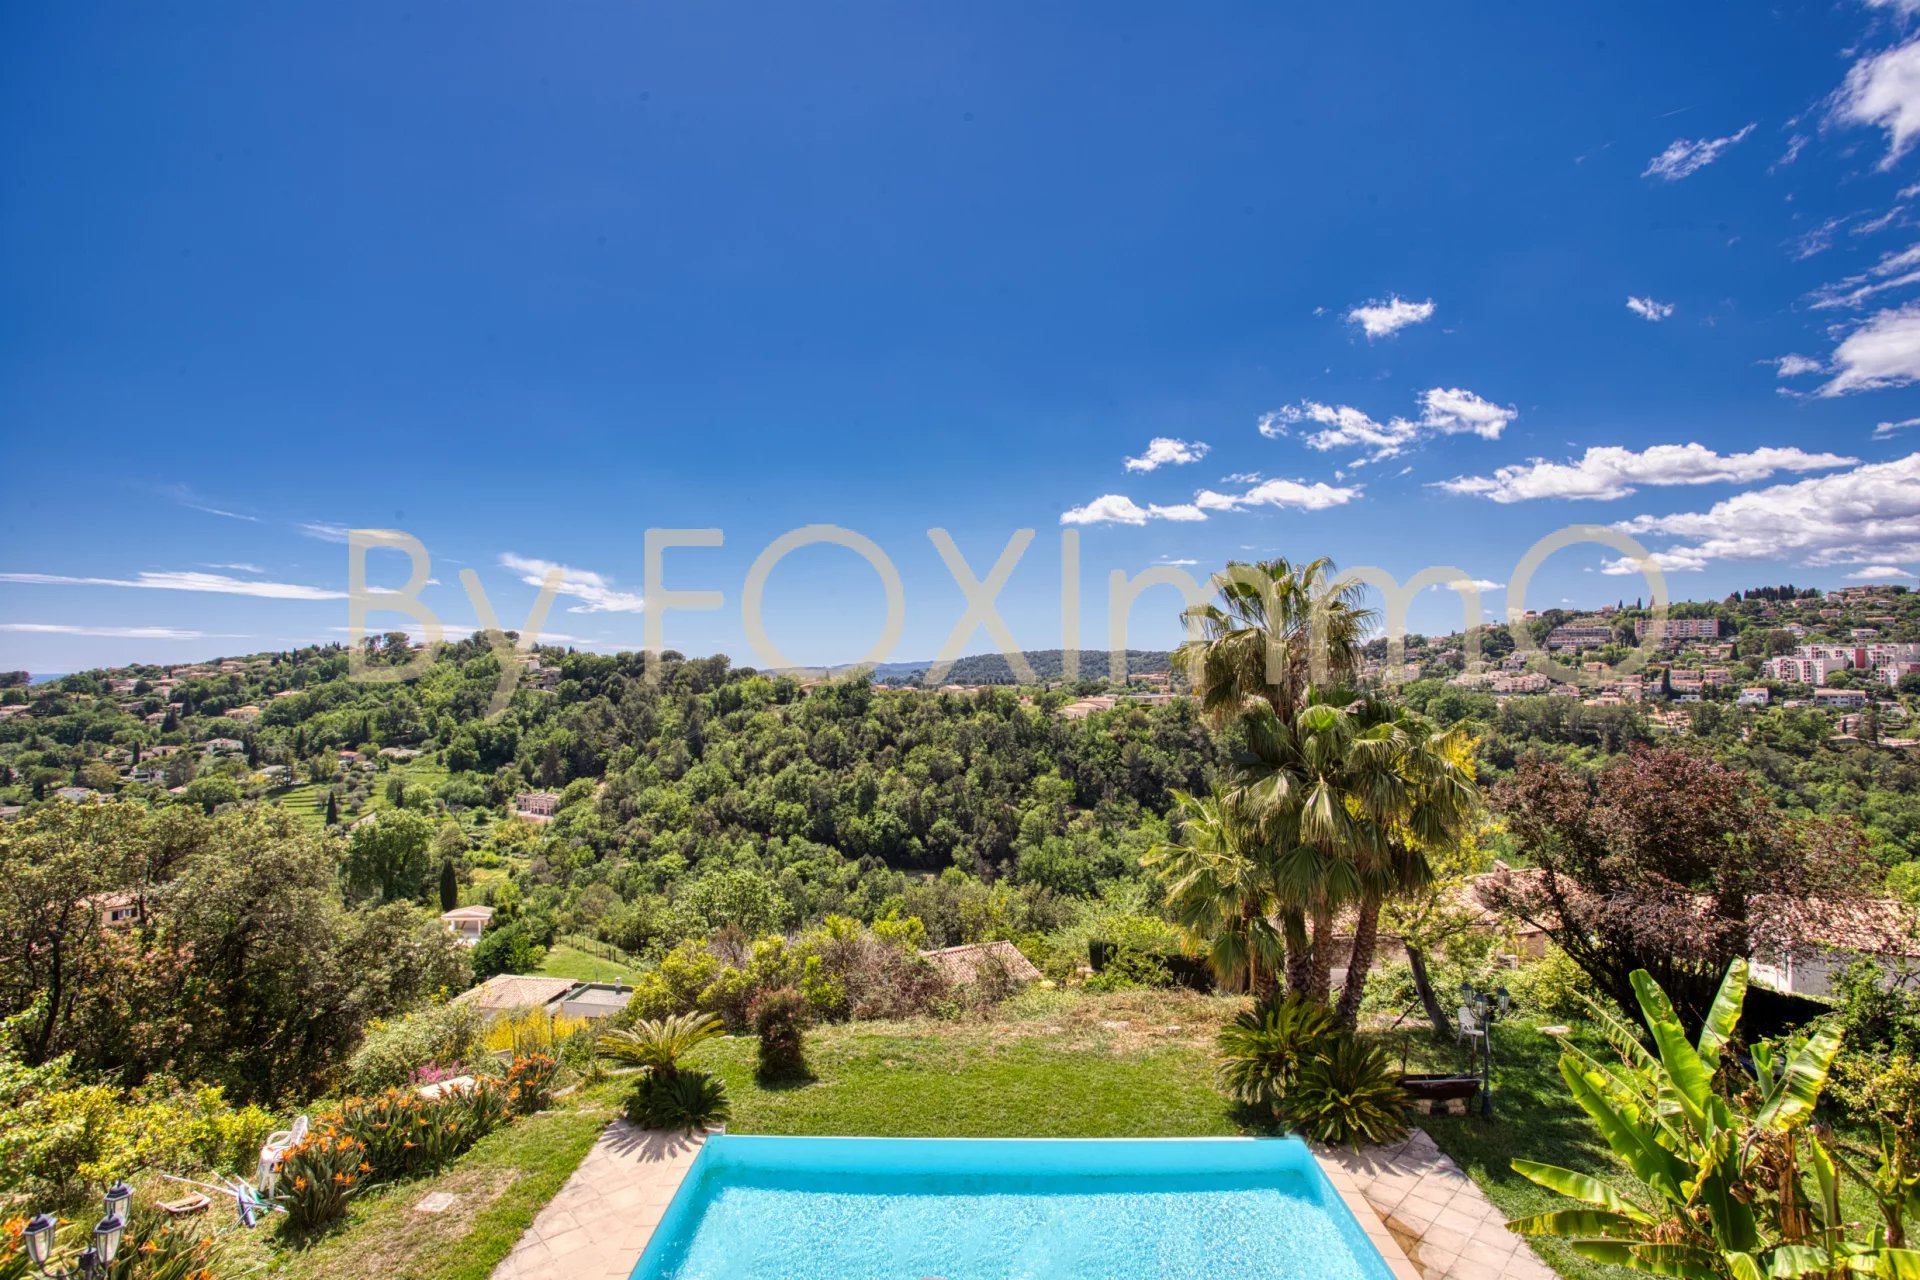 EXCLUSIVITÉ ! Sur la Côte d'Azur, Vence, Villa Récente, 400m2, dominante, calme absolu, vue dégagée, parfaite exposition